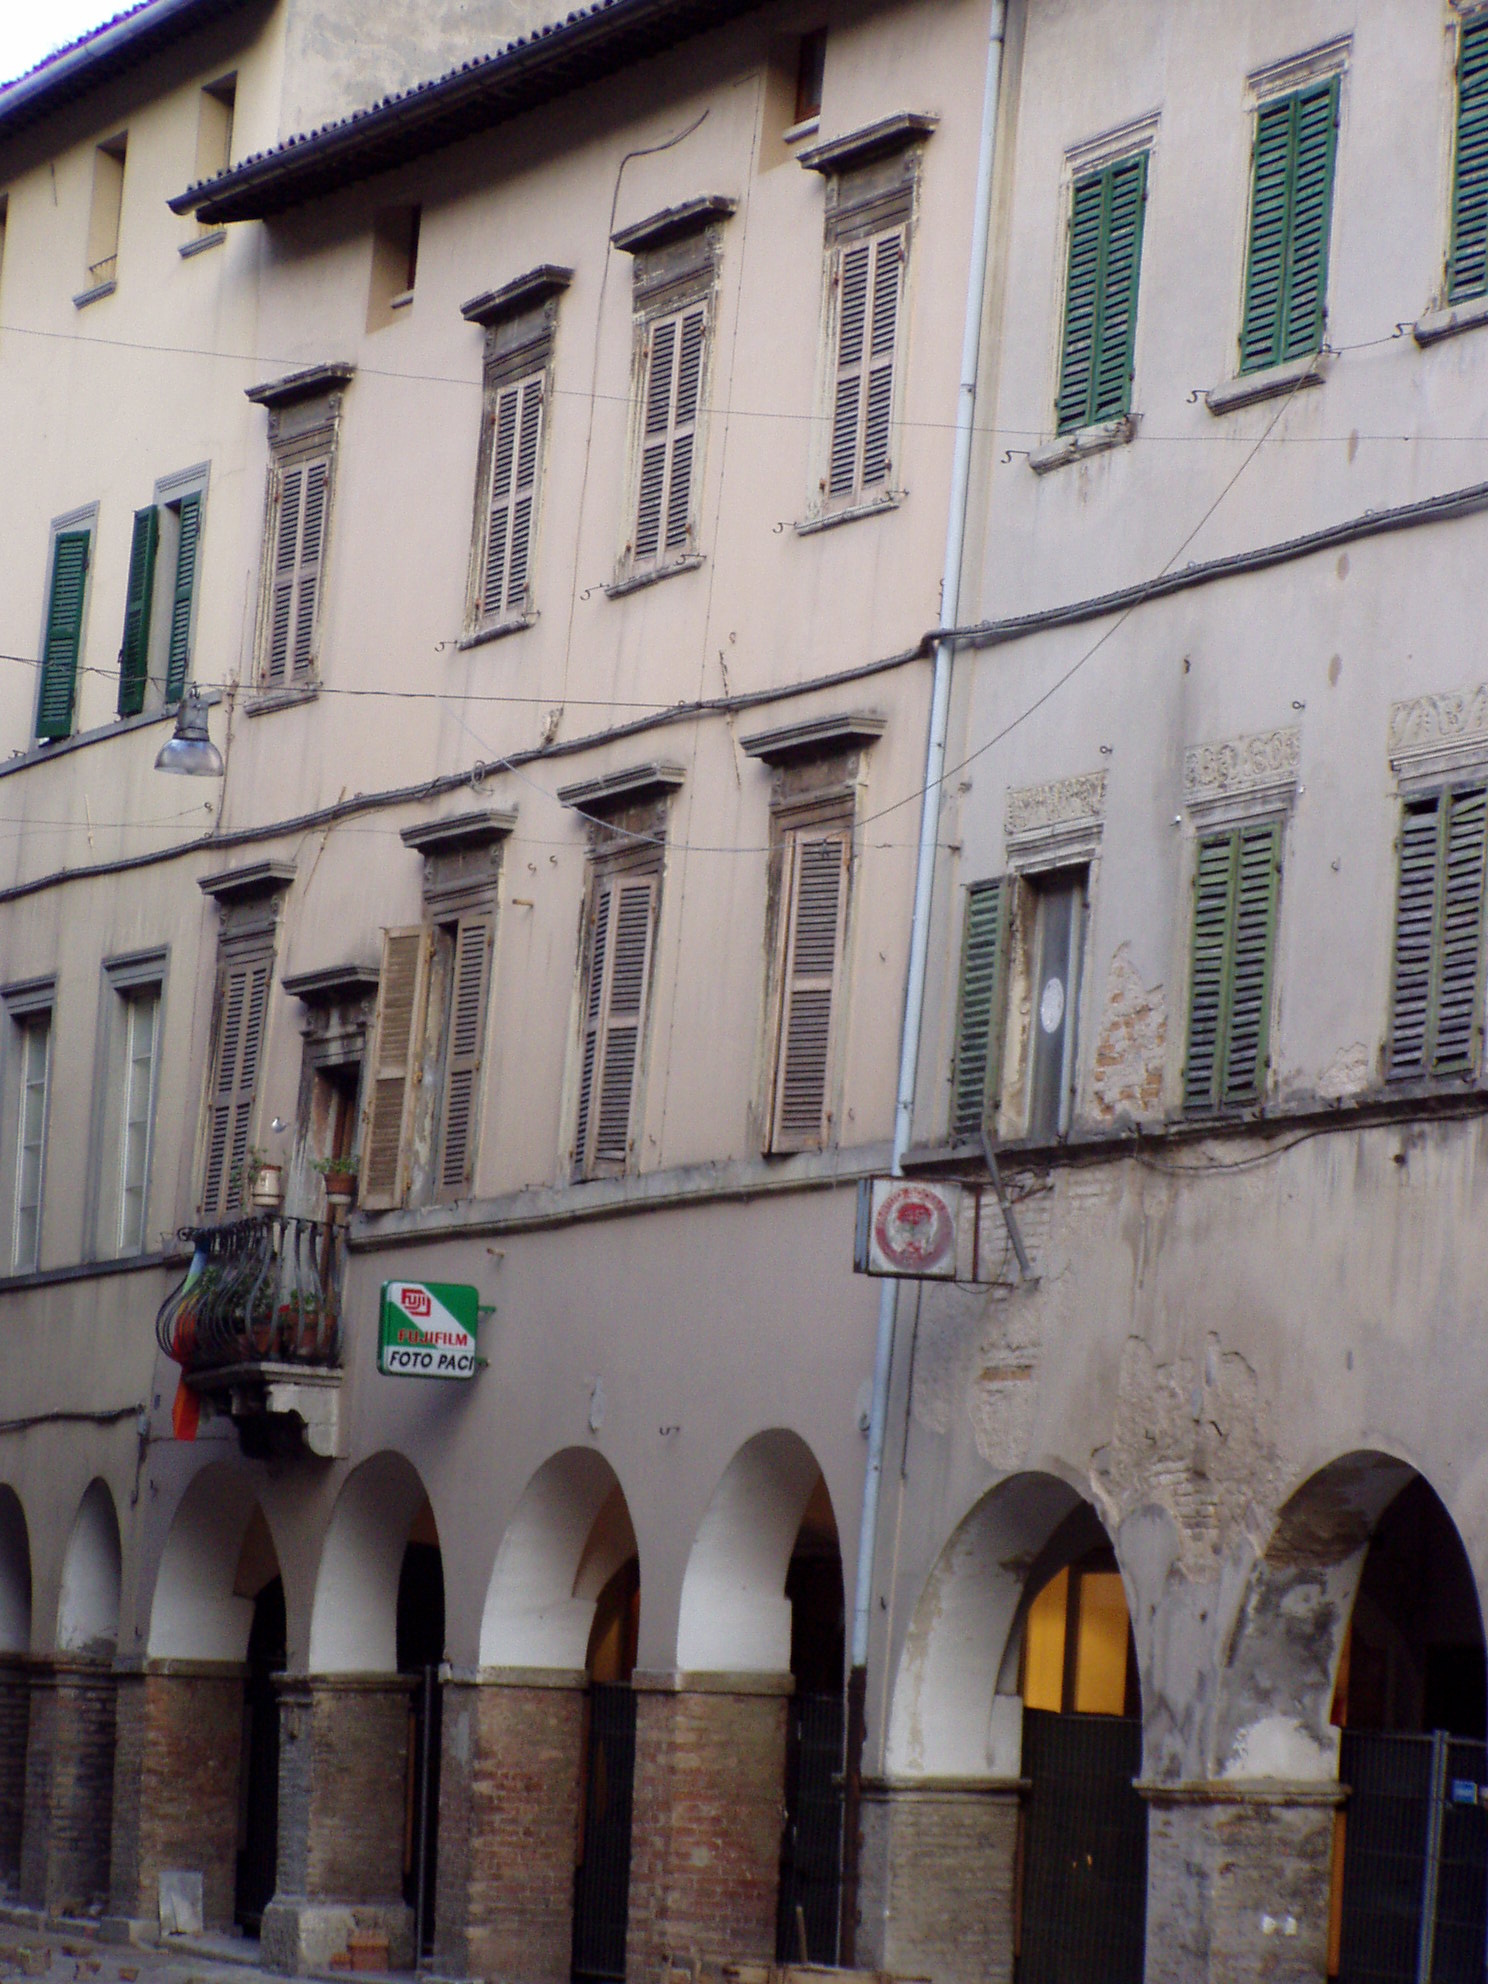 Palazzo nobiliare (palazzo, nobiliare) - Fossombrone (PU) 